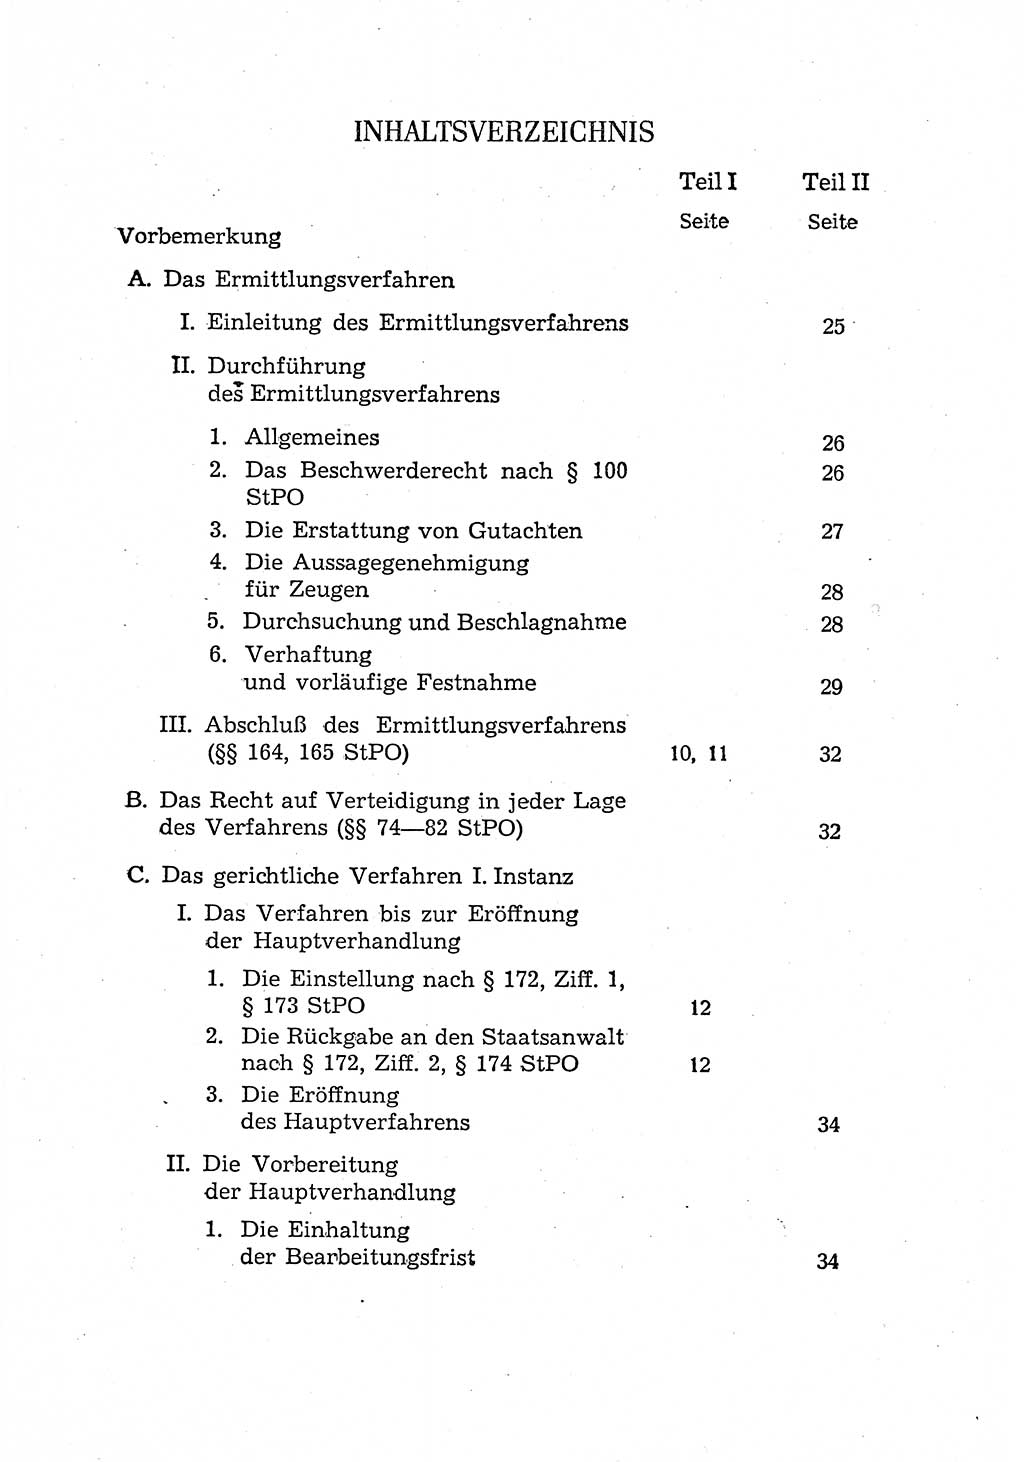 Bericht der Kommission zur Überprüfung der Anwendung der StPO (Strafprozeßordnung) [Deutsche Demokratische Republik (DDR)] 1956, Seite 5 (Ber. StPO DDR 1956, S. 5)